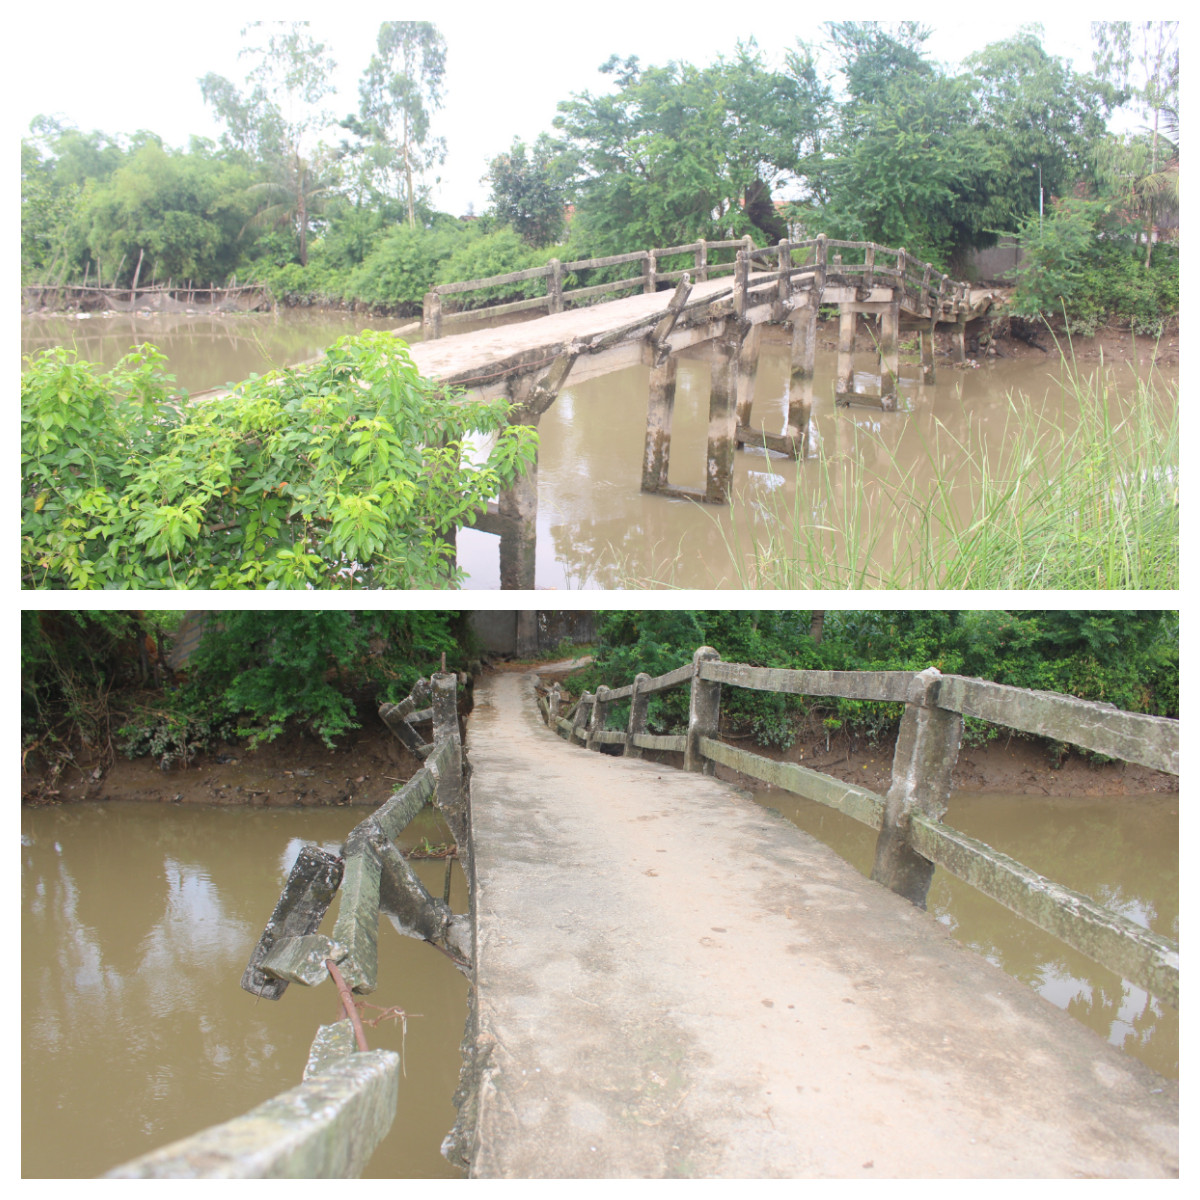 Cầu dân sinh bắc qua sông Thái nối 2 xã Quỳnh Hưng và Quỳnh Diễn đang xuống cấp nghiêm trọng.